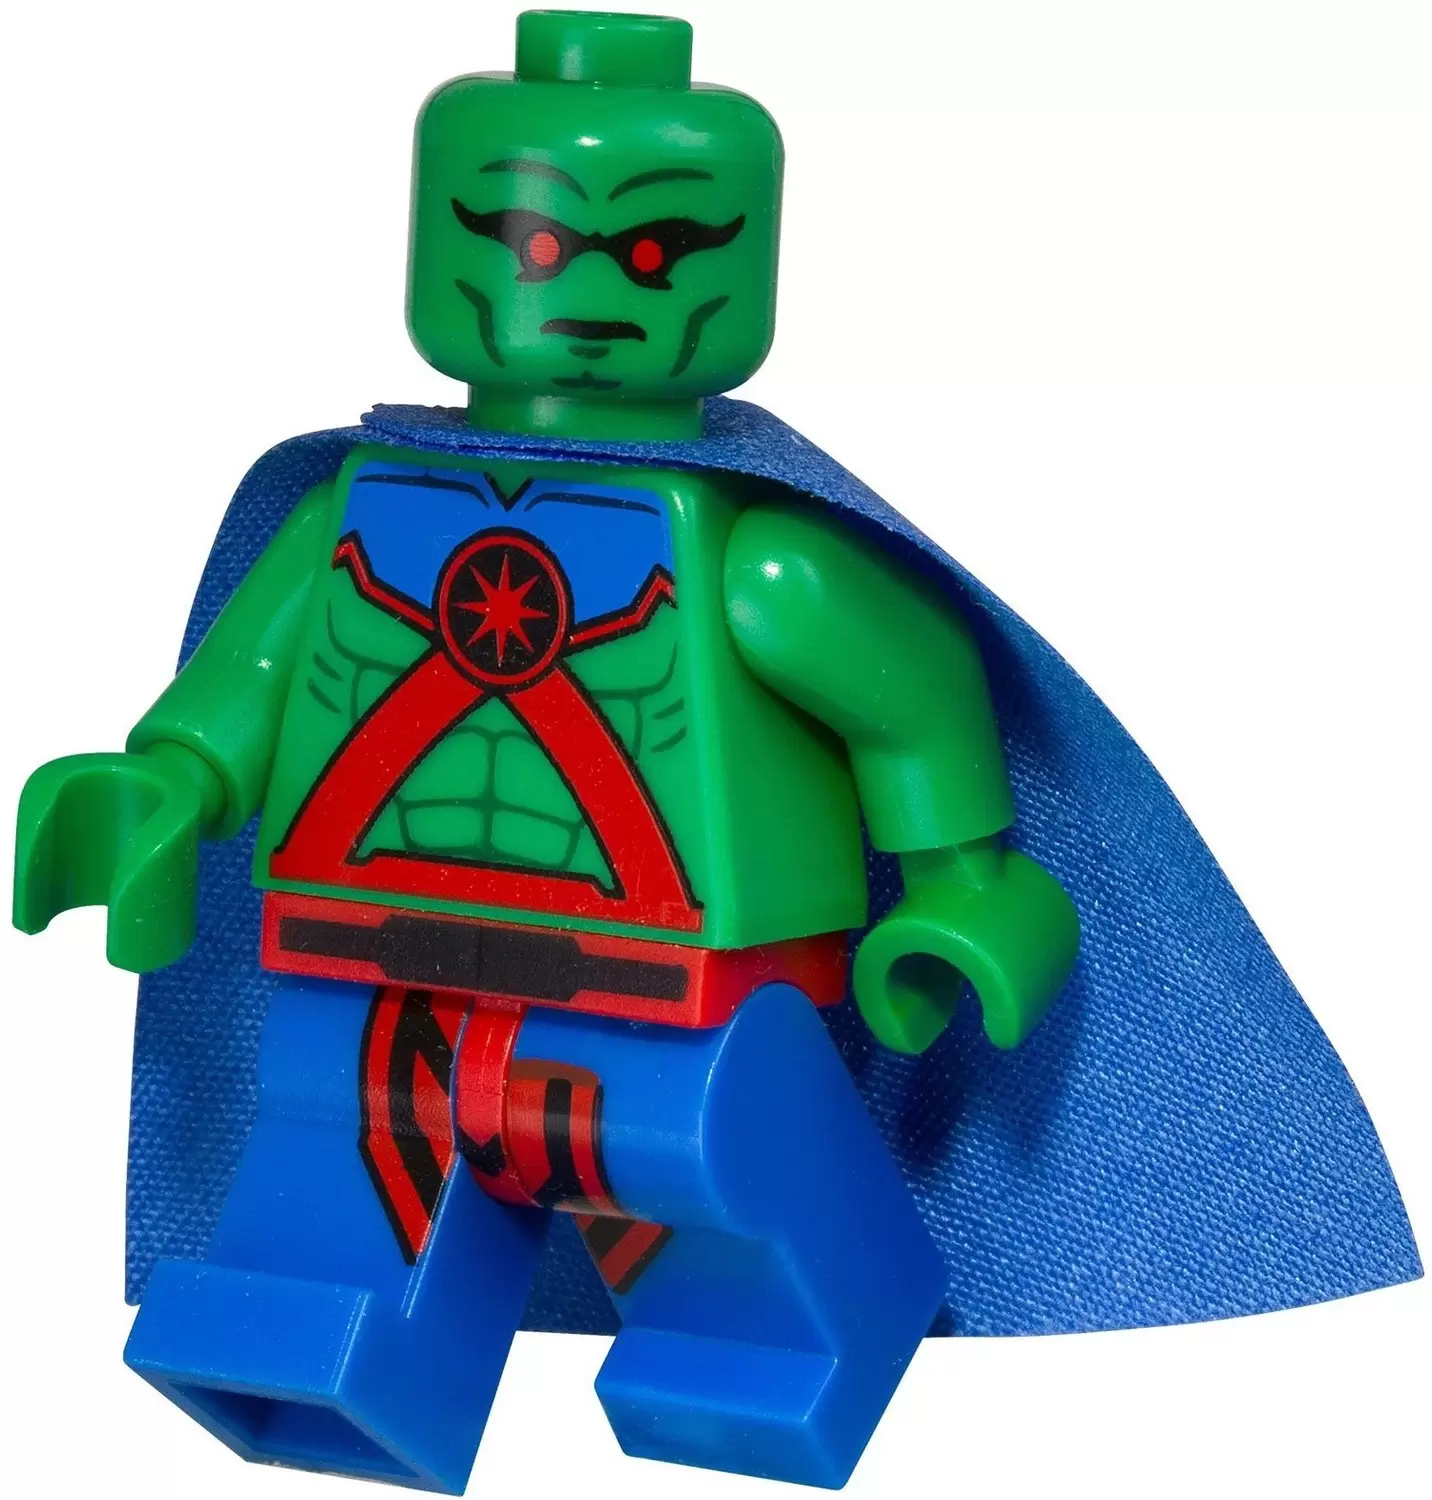 LEGO DC Comics Super Heroes - Martian Manhunter